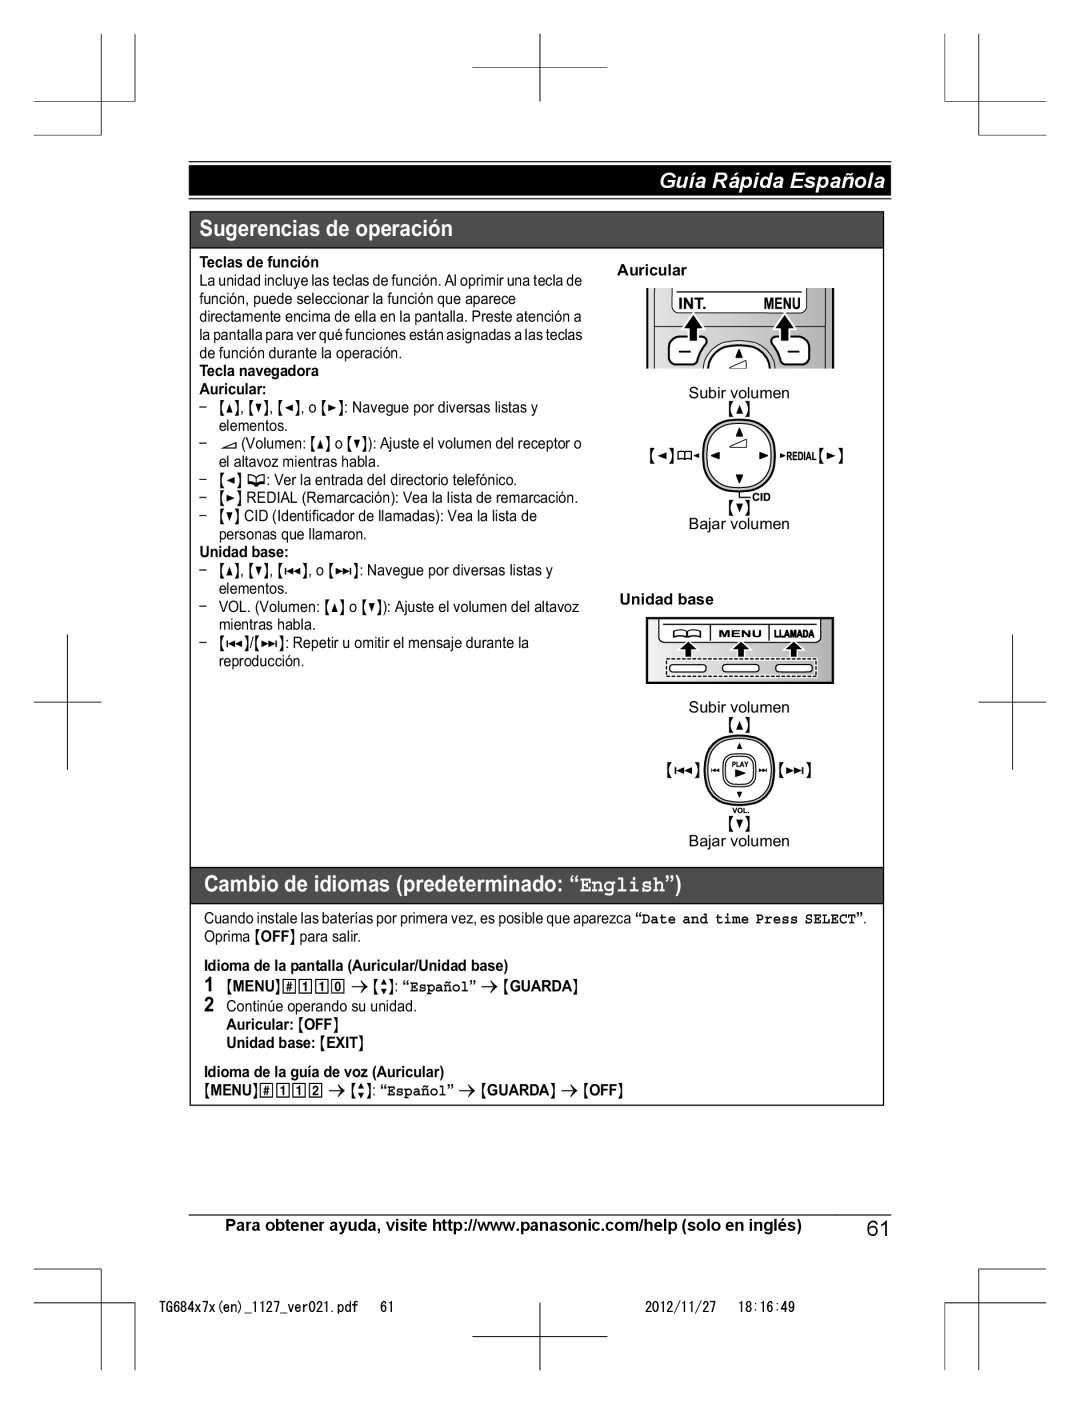 Panasonic KX-TG6872, KX-TG6873 Sugerencias de operación, Cambio de idiomas predeterminado “English”, Guía Rápida Española 